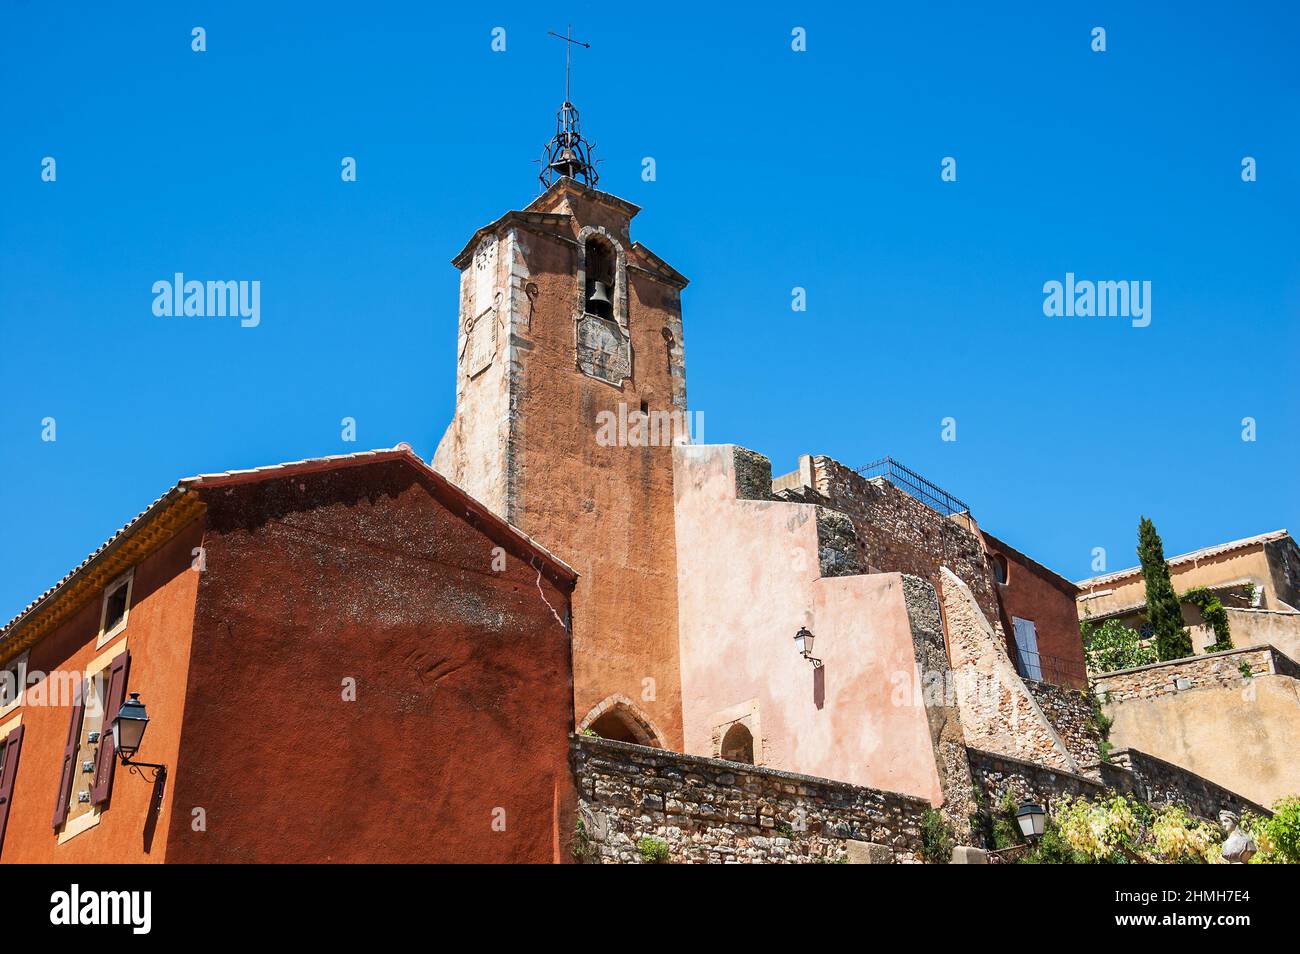 Roussillon ocre villaggio incluso nella lista dei 'più bei villaggi di Francia'. Provenza Alpi Costa Azzurra, Francia. Foto Stock